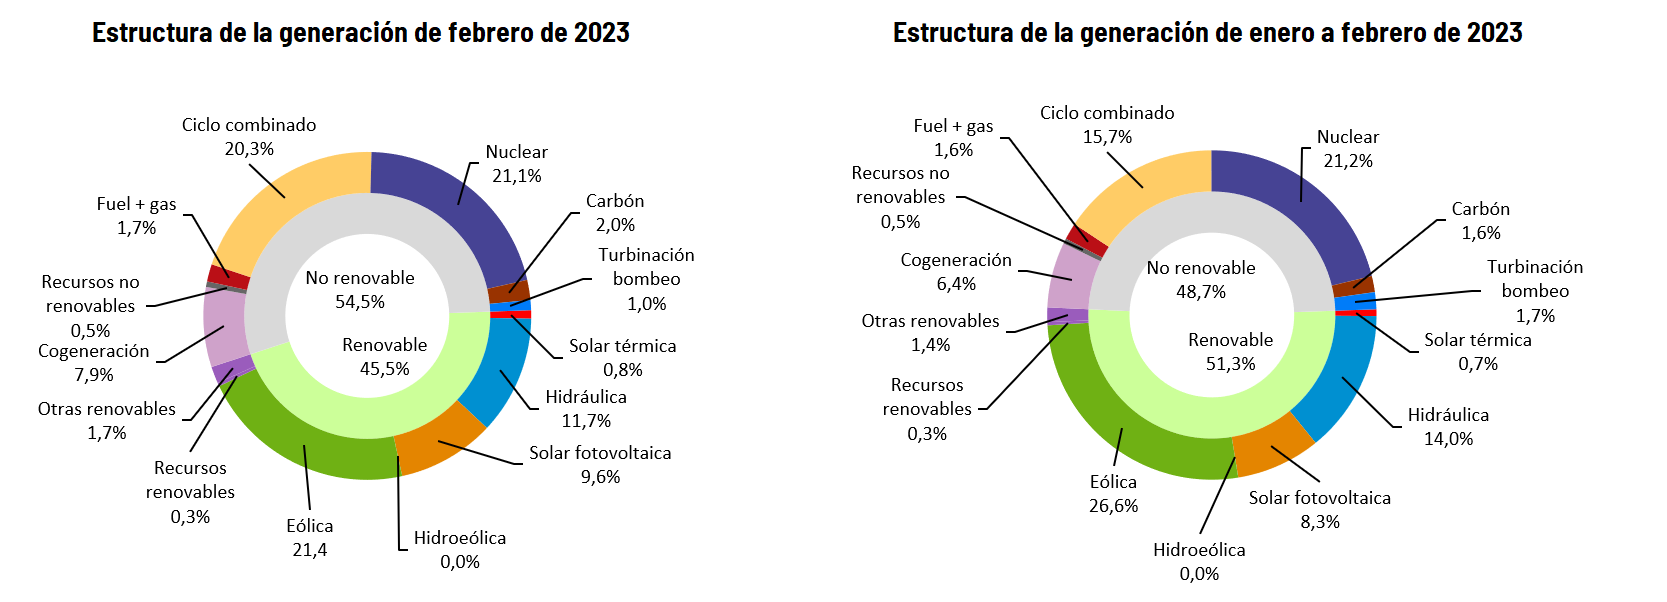 Estructura de la generación en febrero y en 2023